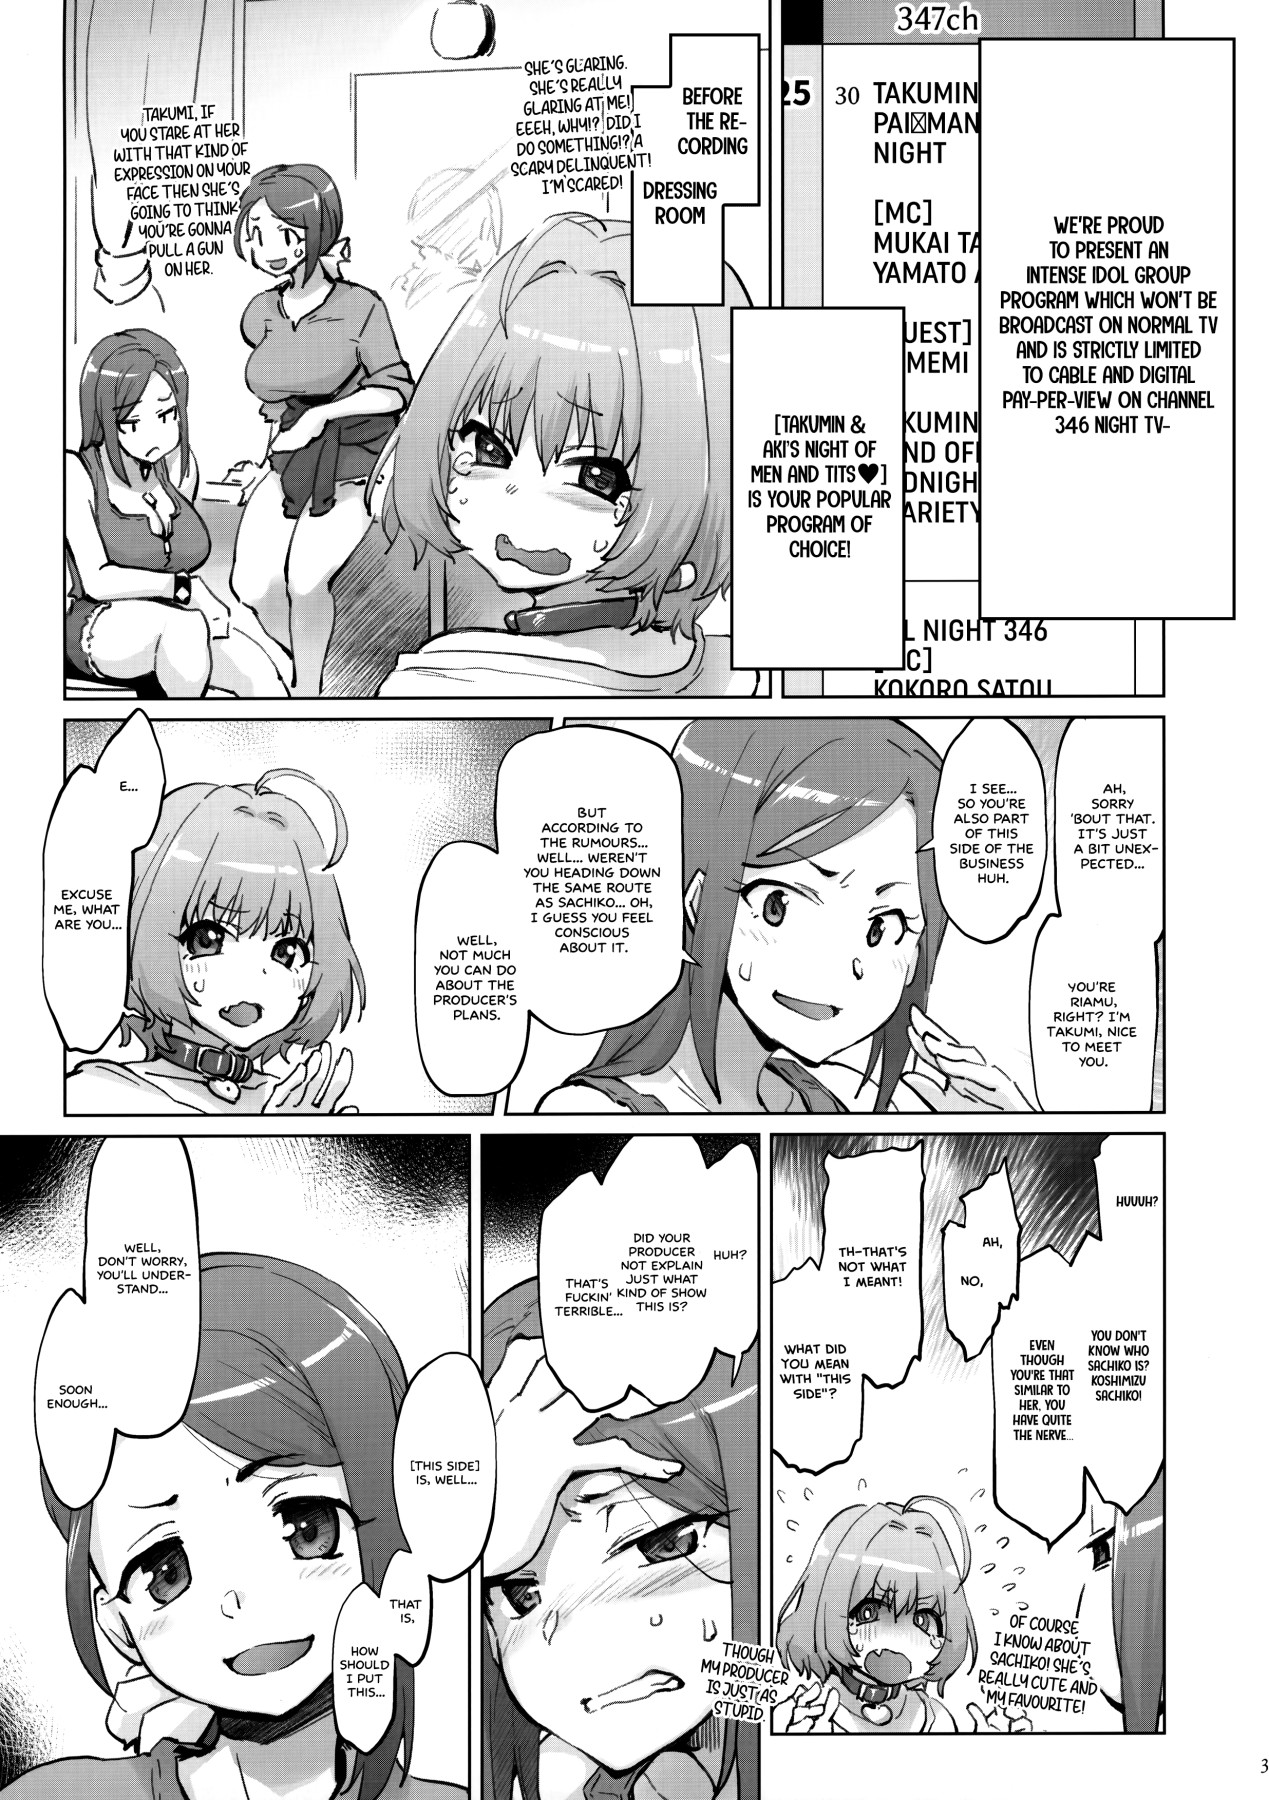 Hentai Manga Comic-Takumin & Aki's BREAST MANISH NIGHT-Read-2